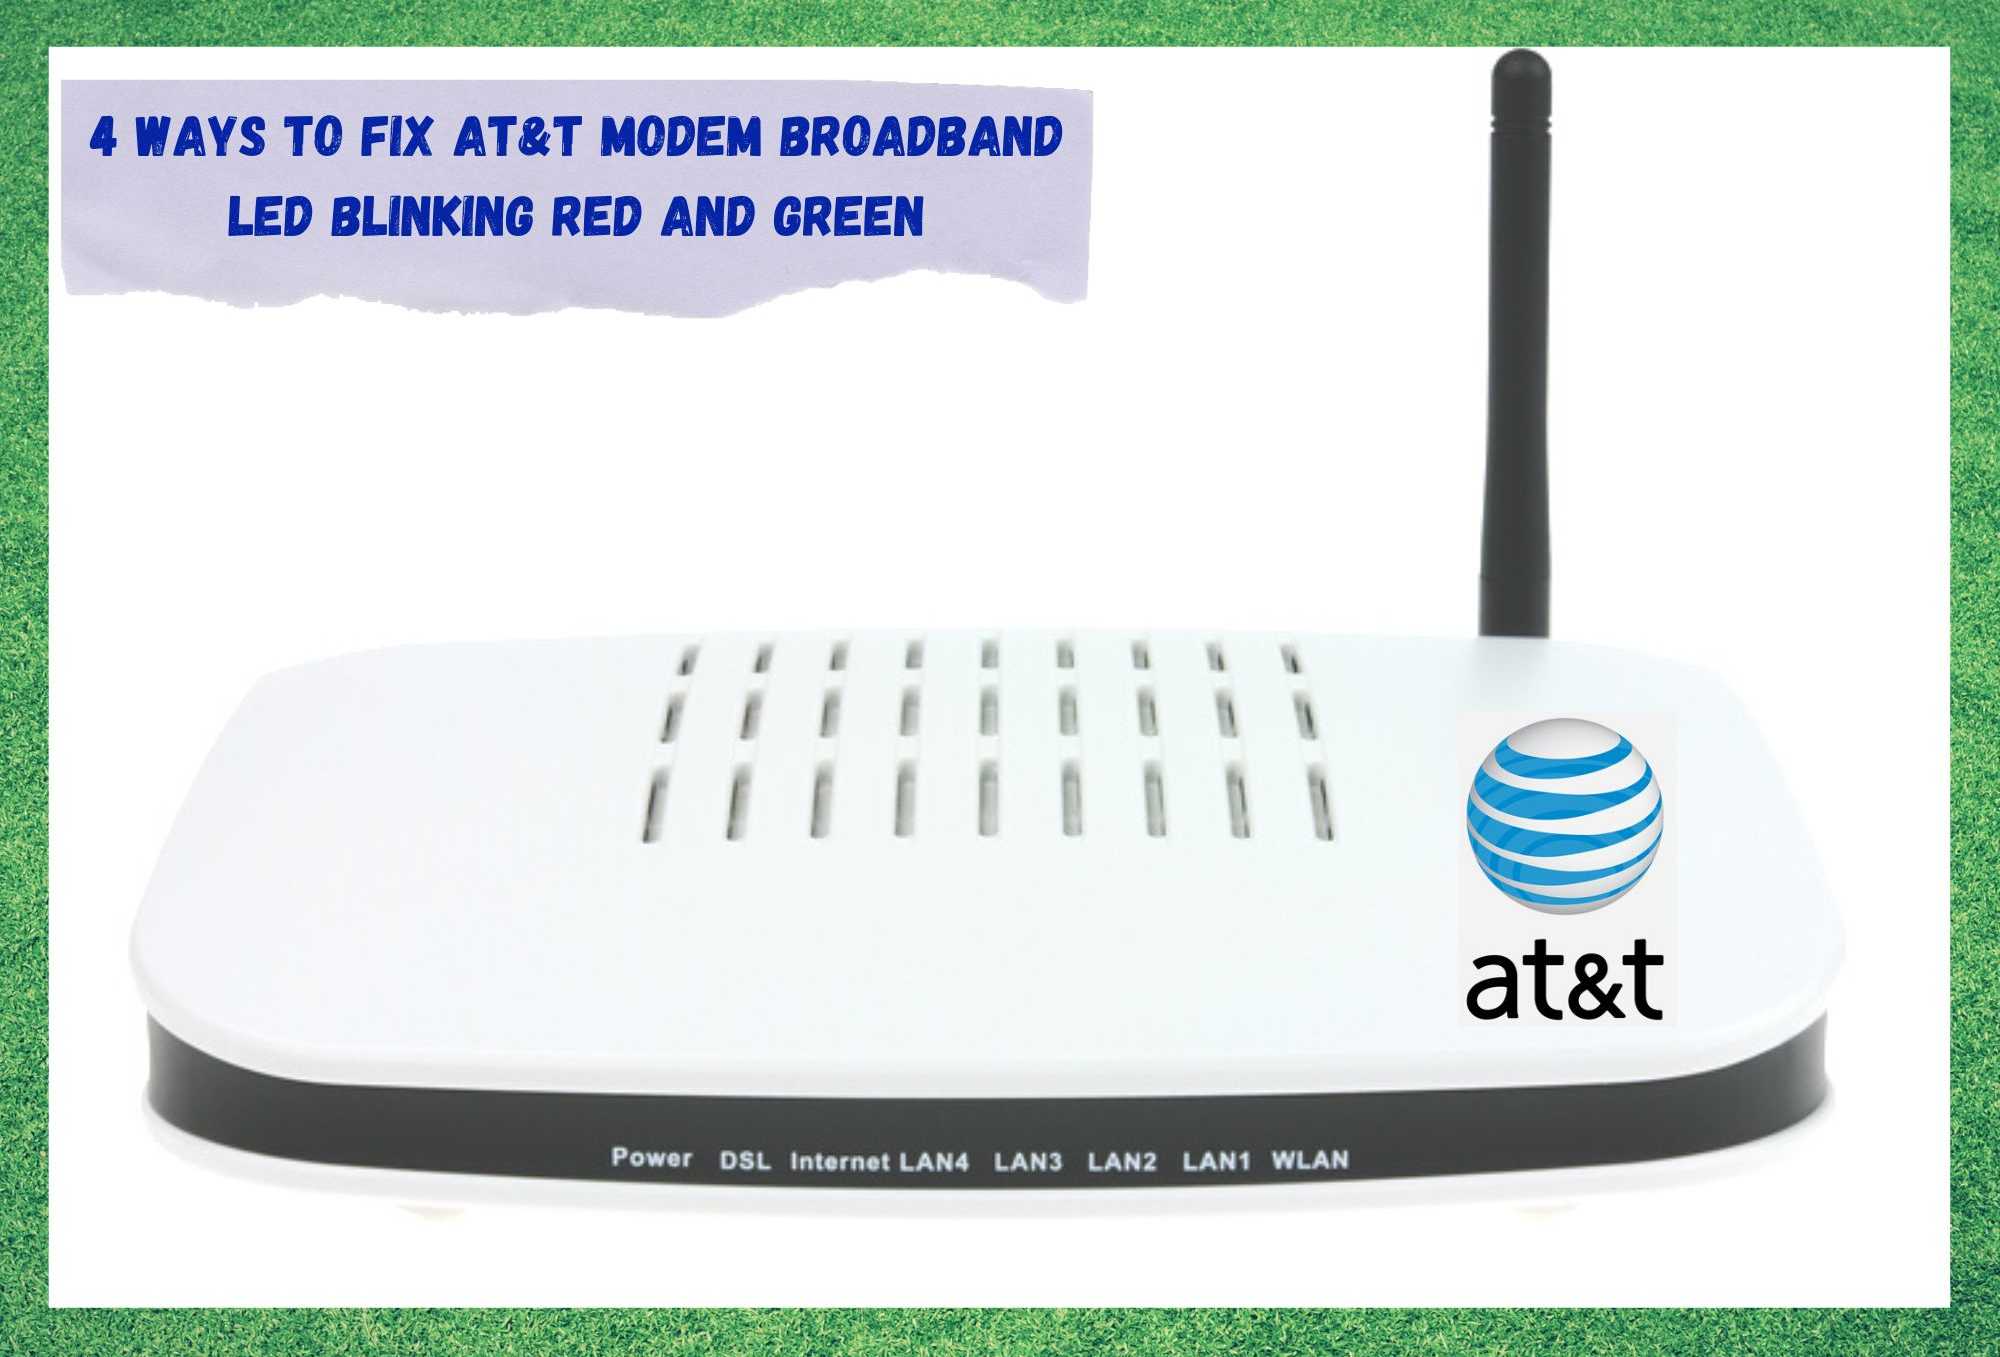 att modem broadband light blinking red and green